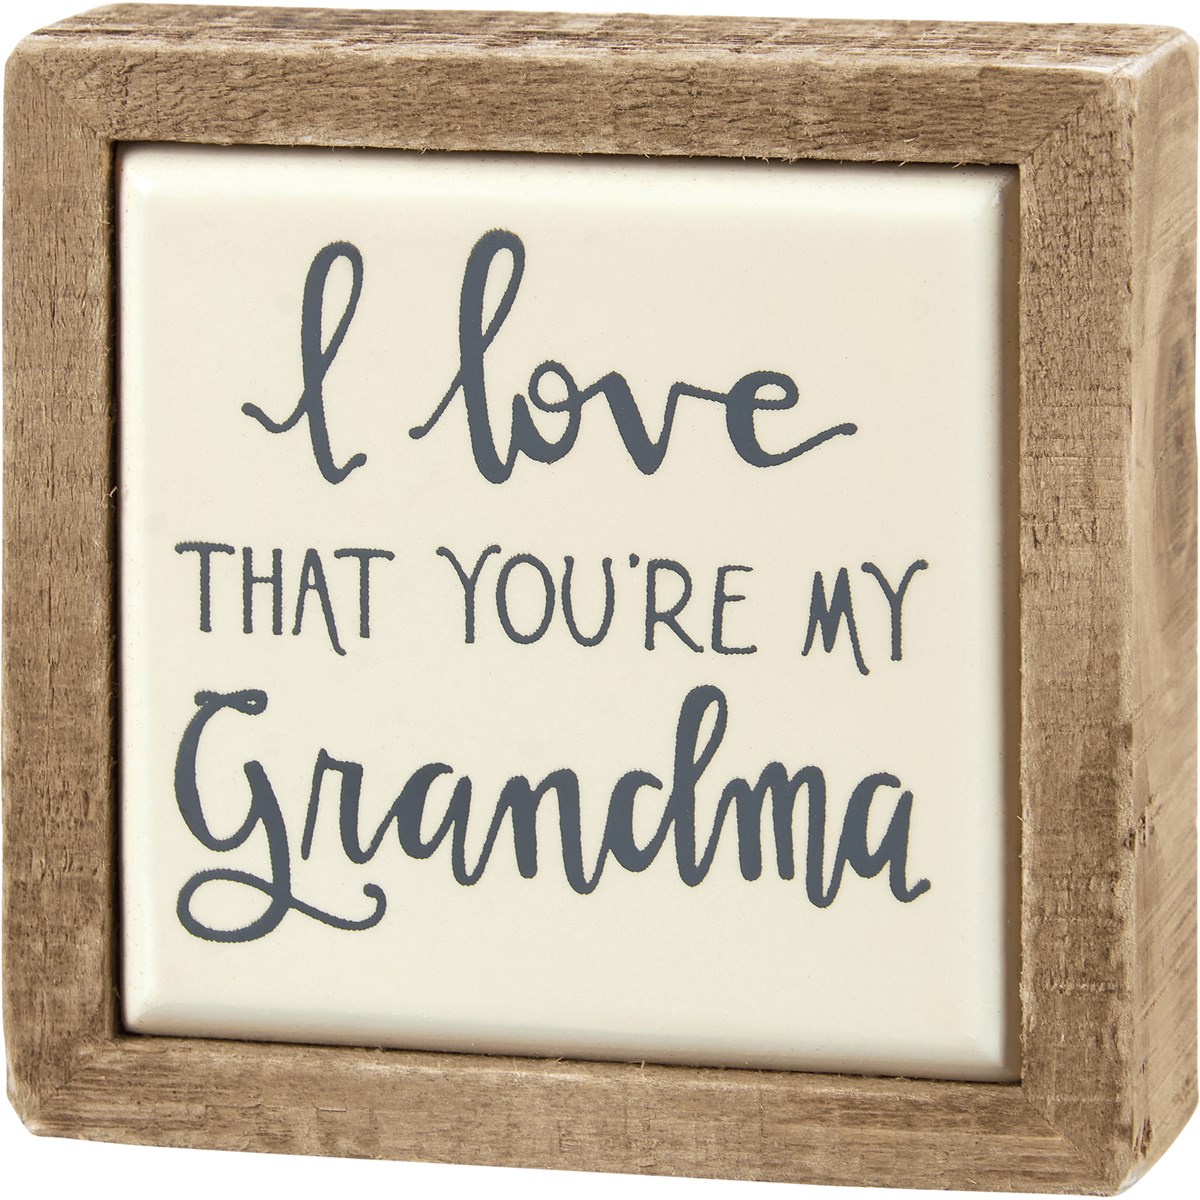 Love You're My Grandma Box Sign Mini - Wood